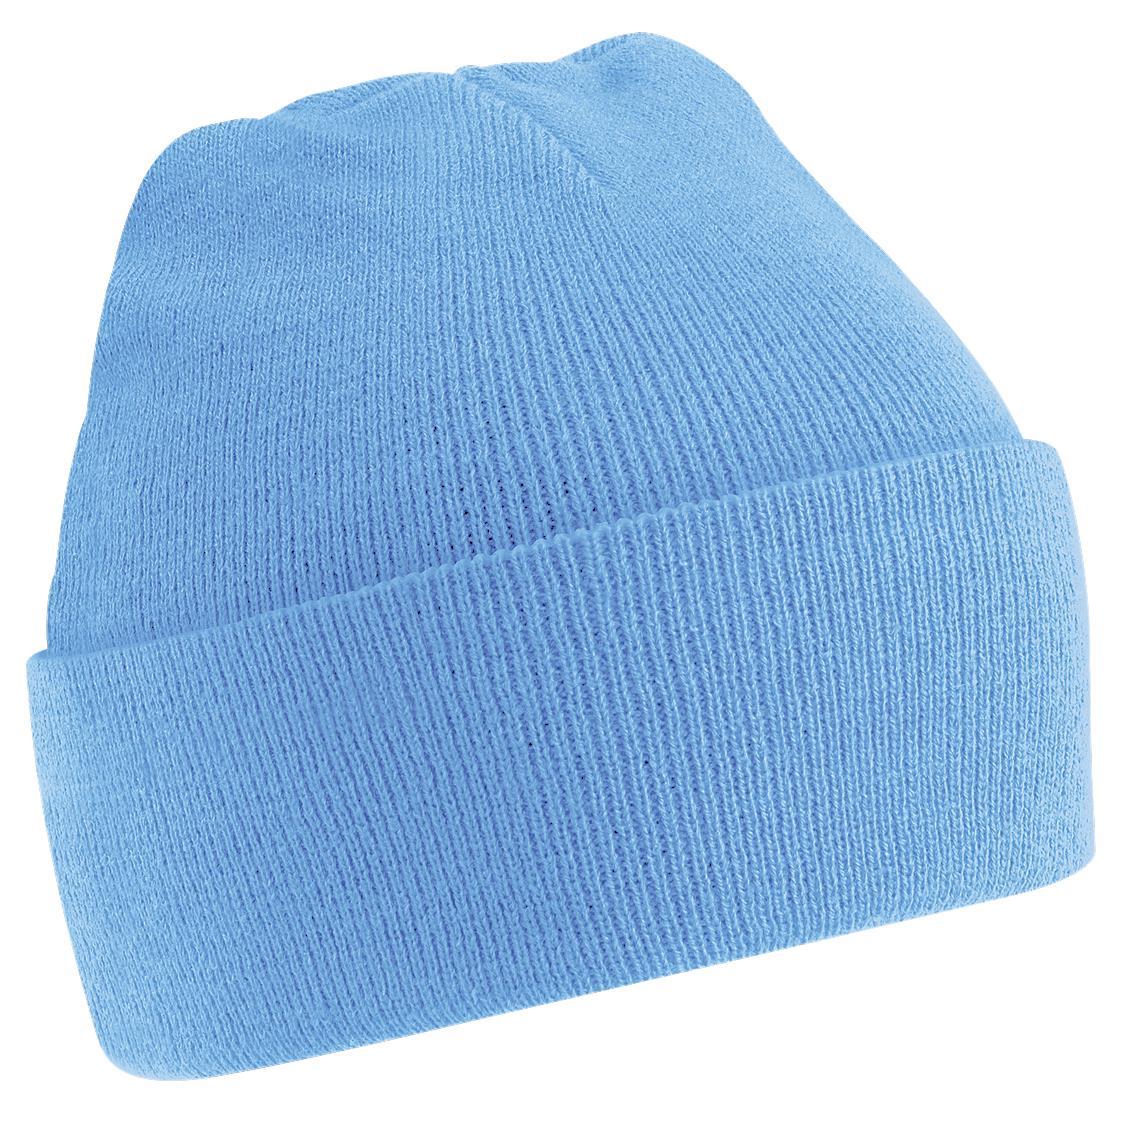 Beechfield Soft Feel Knitted Winter Hat (Sky Blue) (One Size)